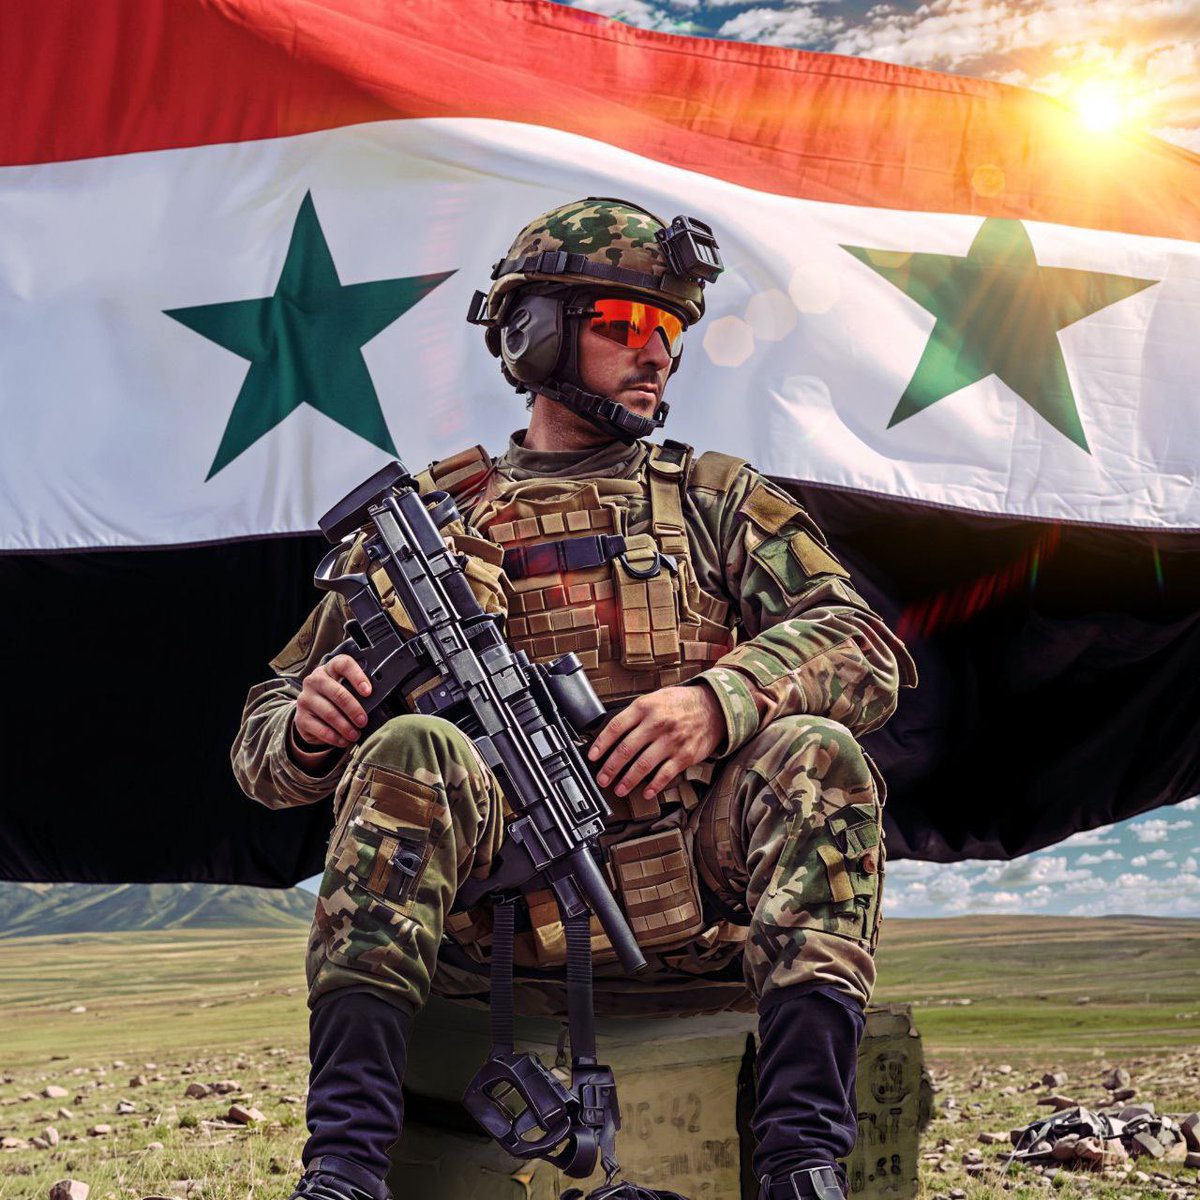 اللواء سهيل الحسن قائداً للقوات الخاصة السورية . ⚔️🇸🇾⚔️

#Tiger